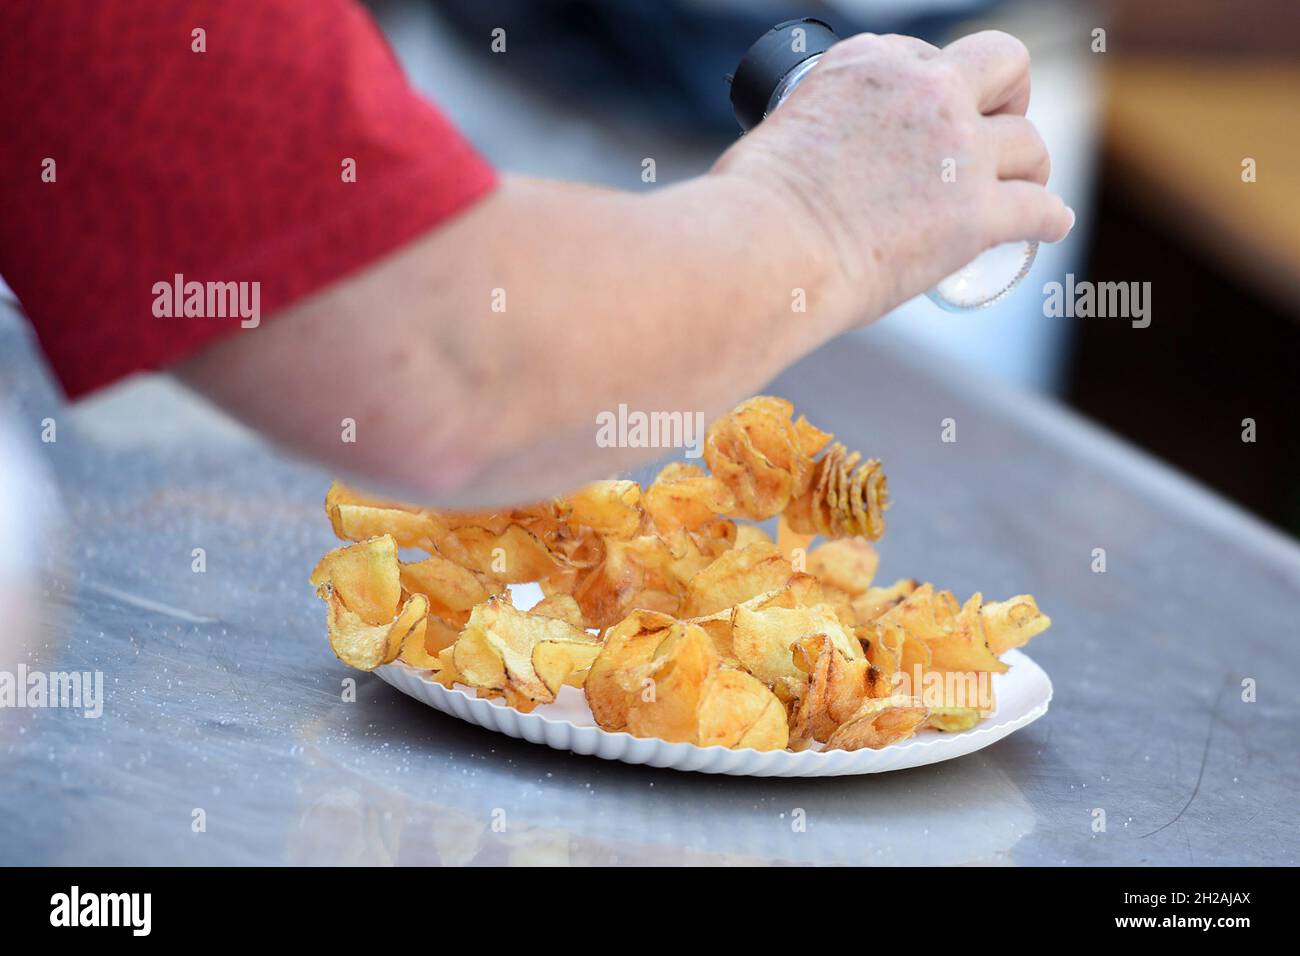 Selbst gemachte Kartoffel-chips auf einem Tisch - patatine fatte in casa su un tavolo Foto Stock